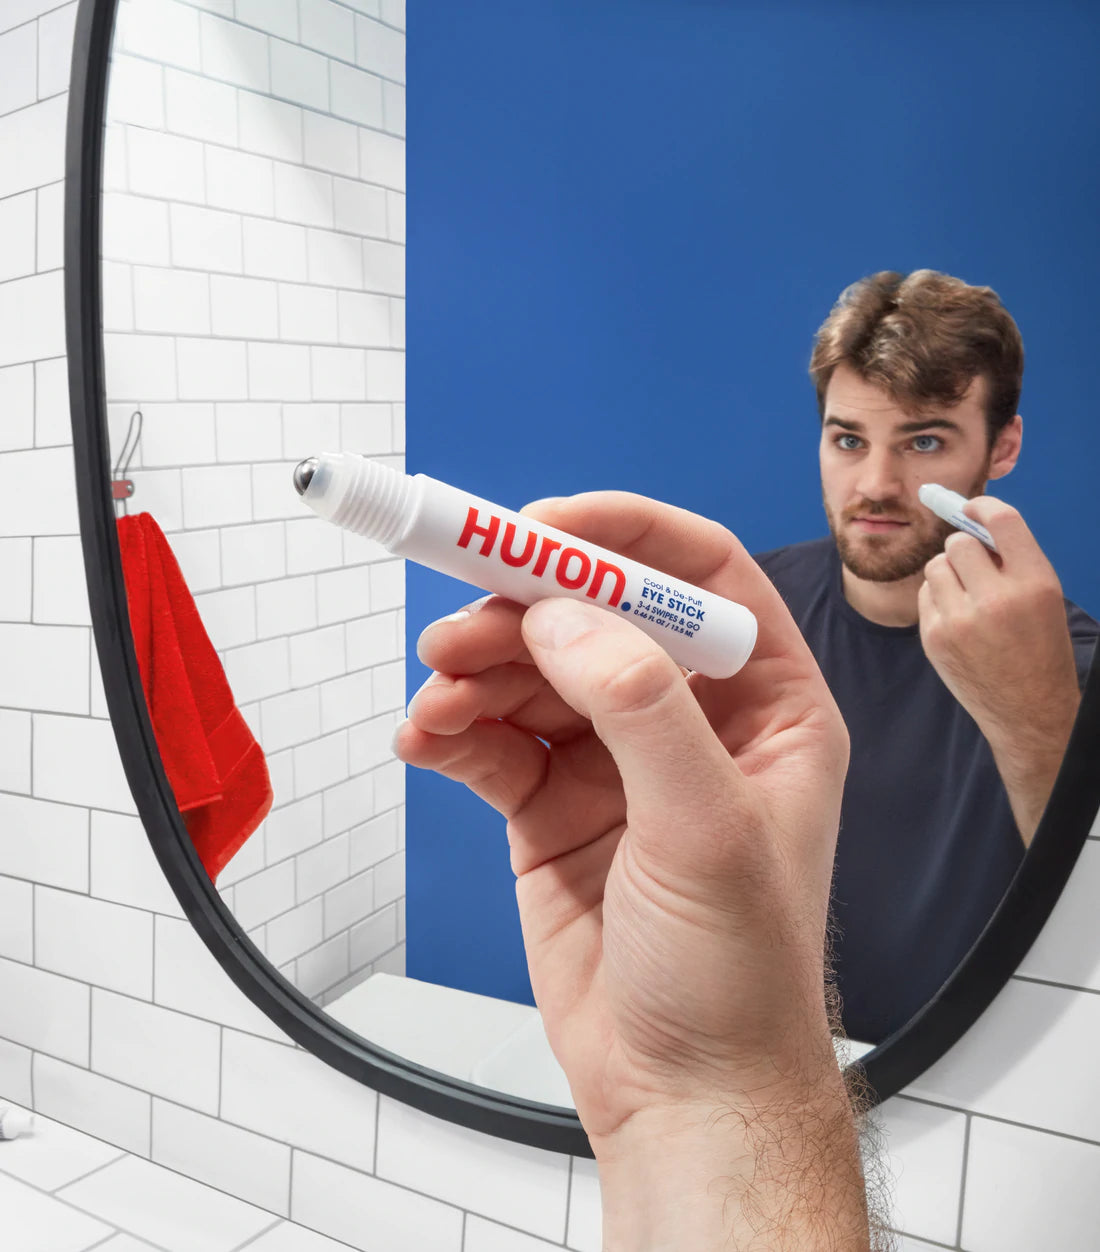 A man applies an eye care product using a bathroom mirror. 